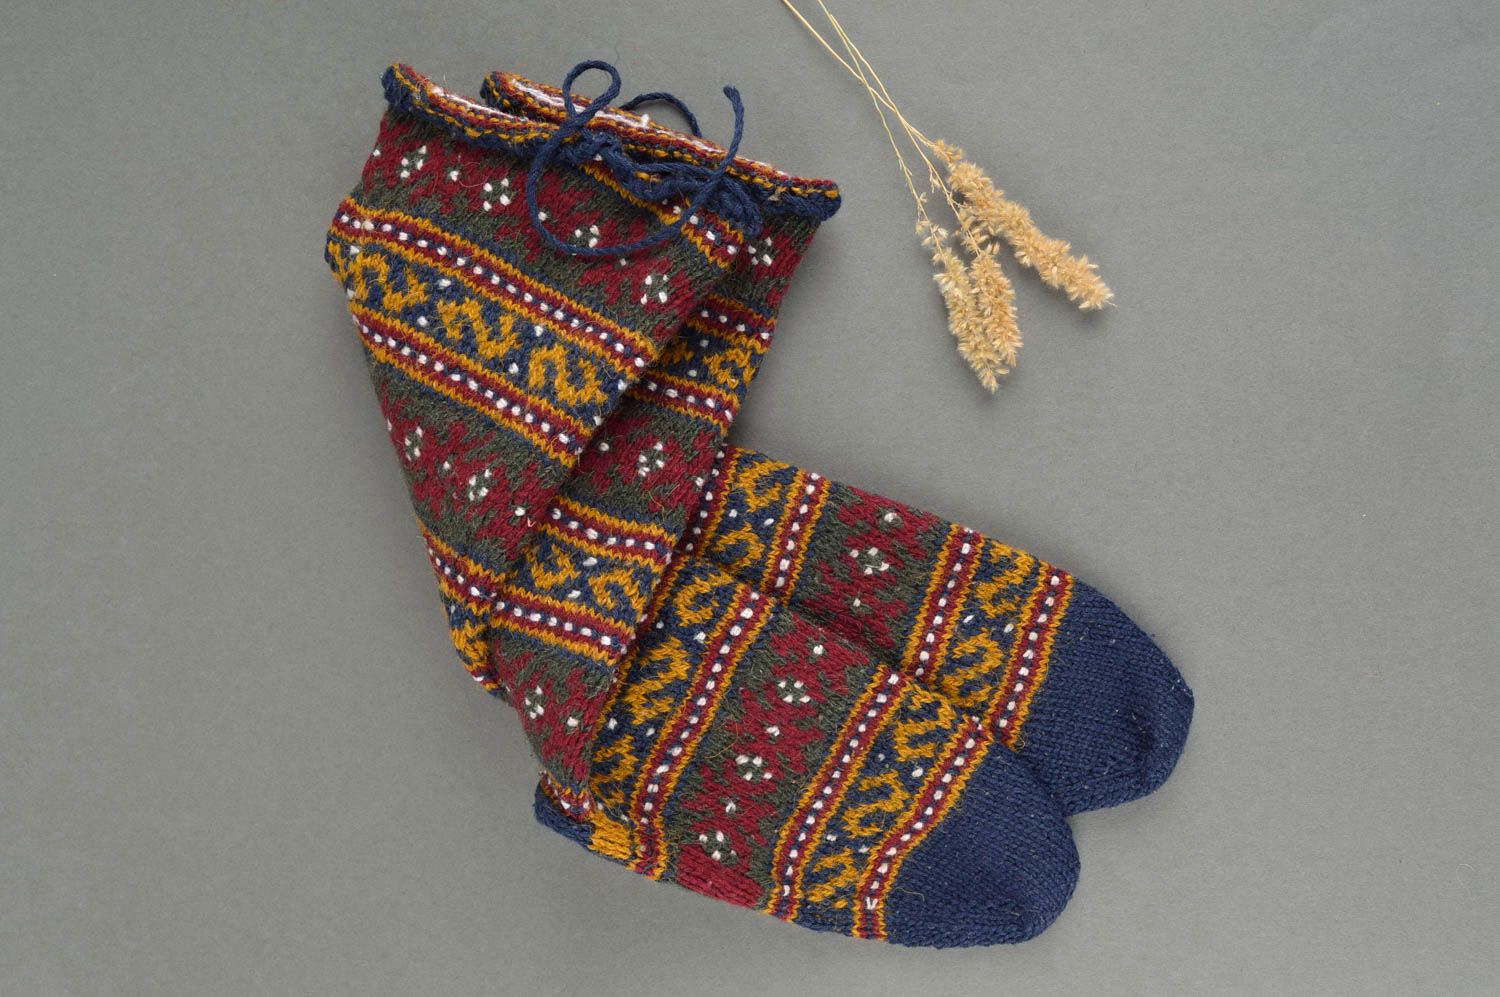 Calcetines tejidos a crochet artesanales ropa para mujer regalo original foto 1